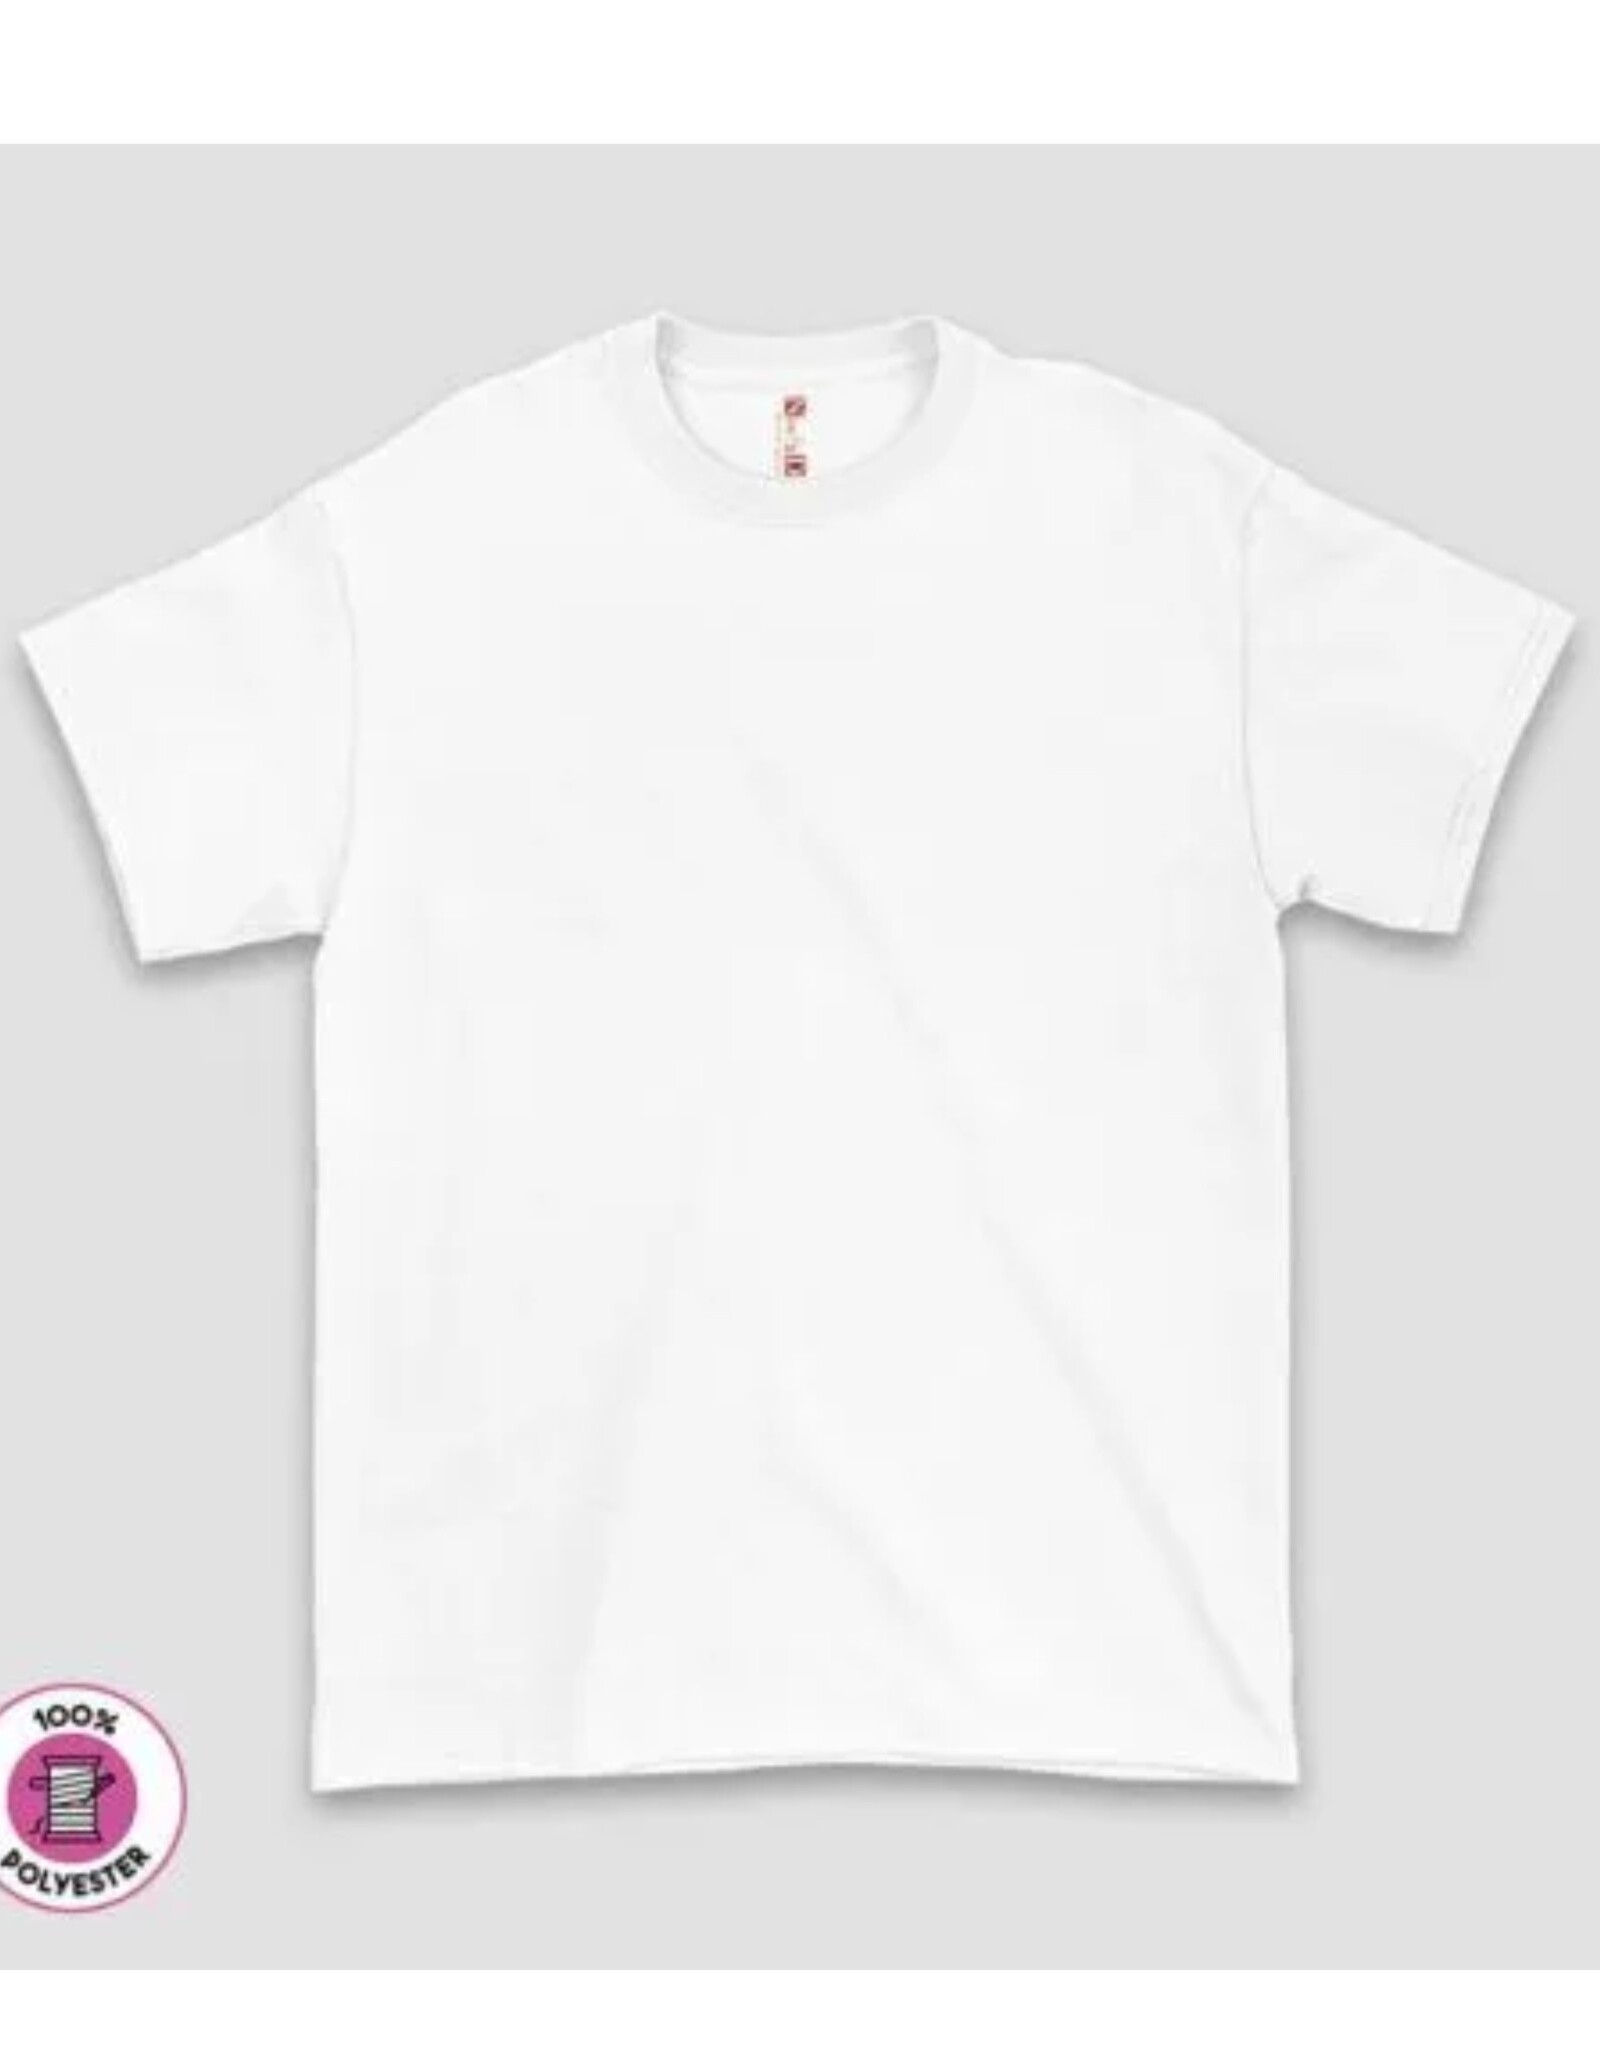 ND Sublimation Unisex Short Sleeve T-Shirt